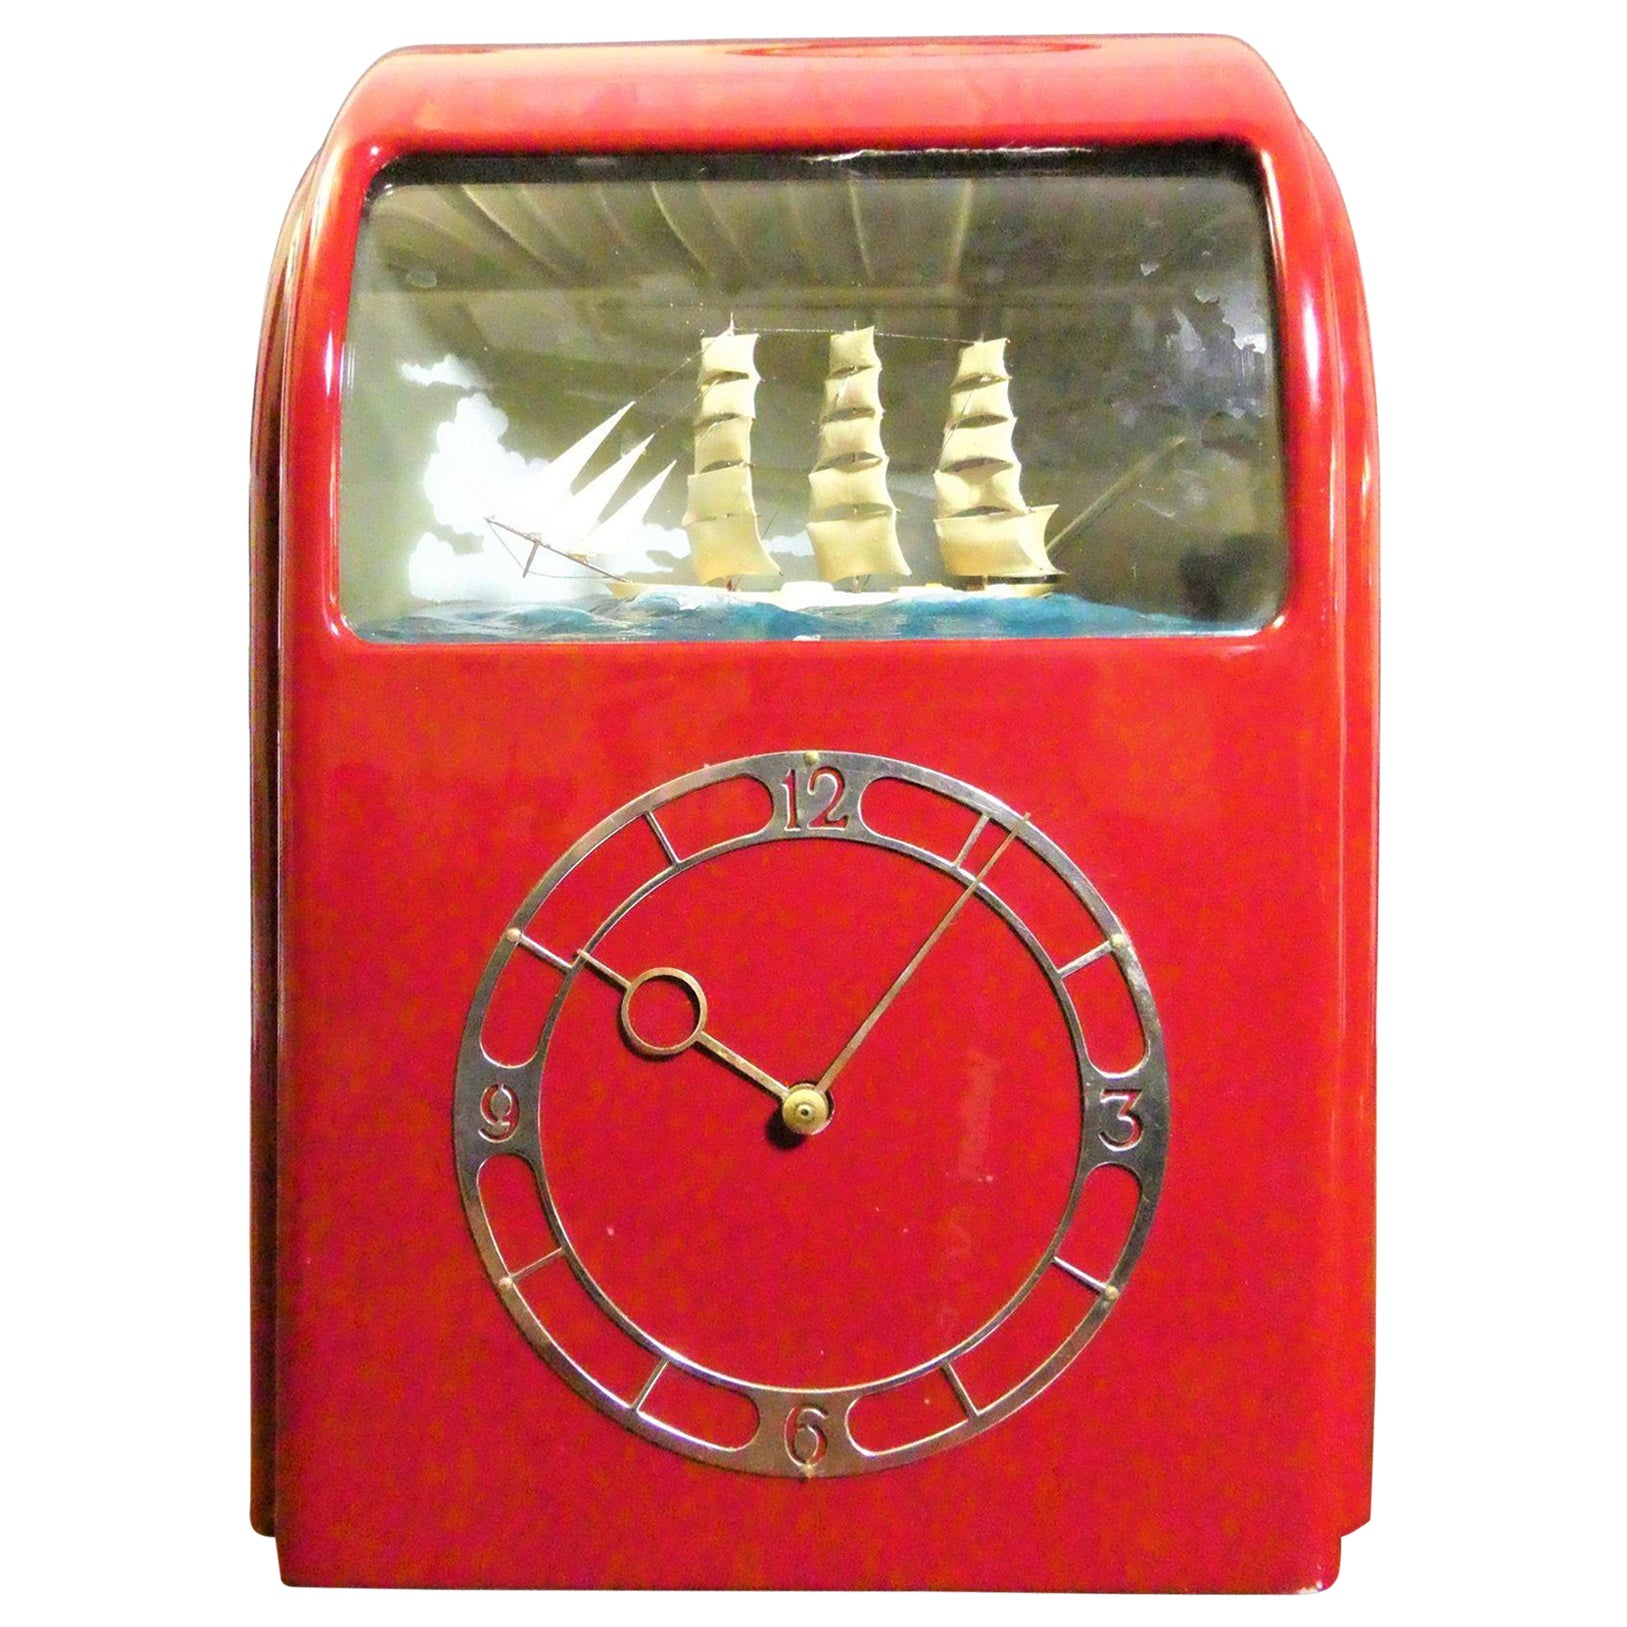 Horloge électrique Vitascope rouge Art Déco